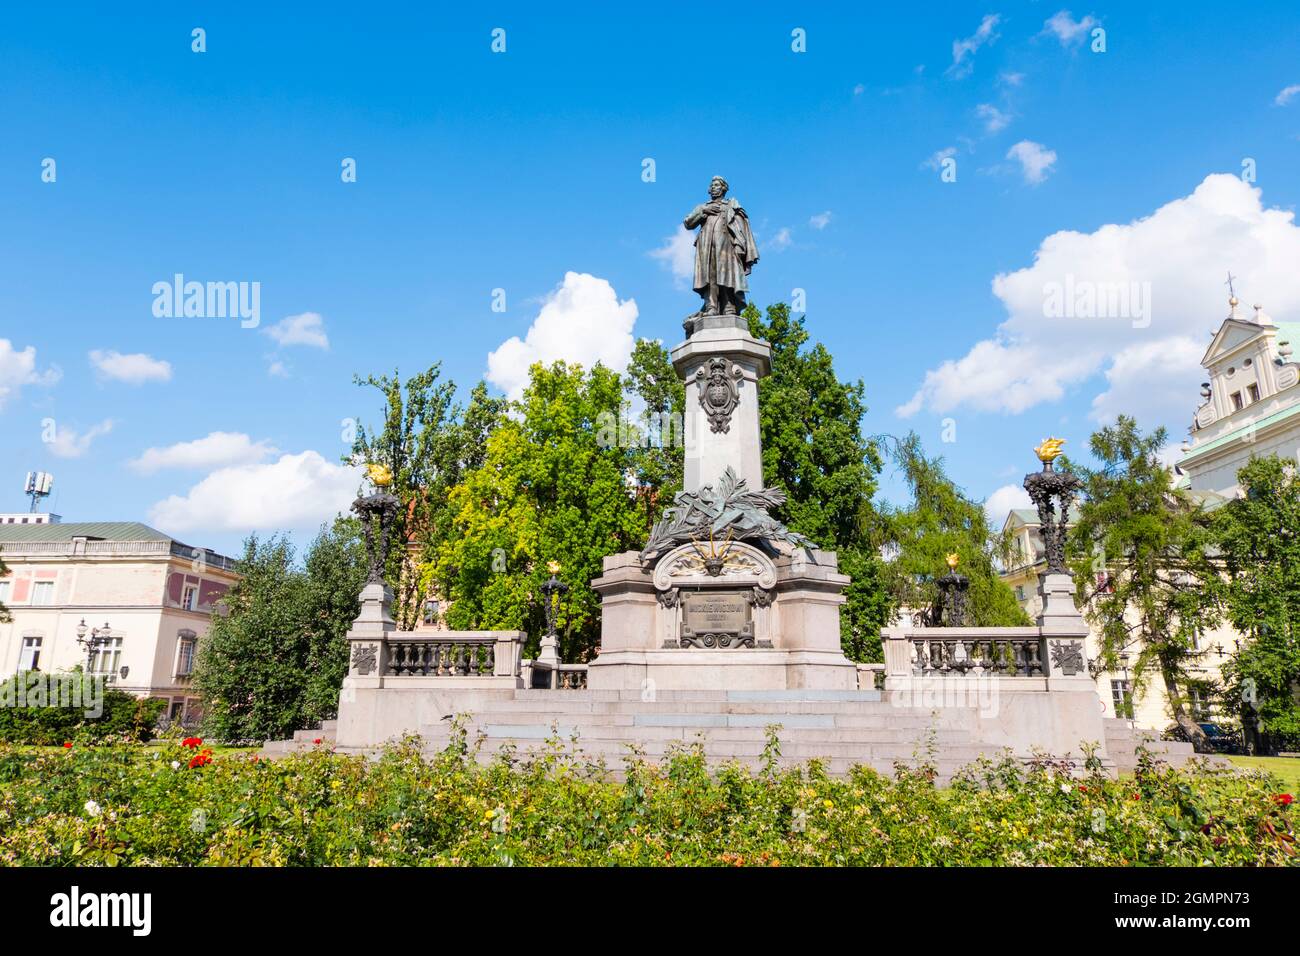 Pomnik Adama Mickiewicza, Monument of Adam Mickiewicz, , Krakowskie Przedmieście, Warsaw, Poland Stock Photo